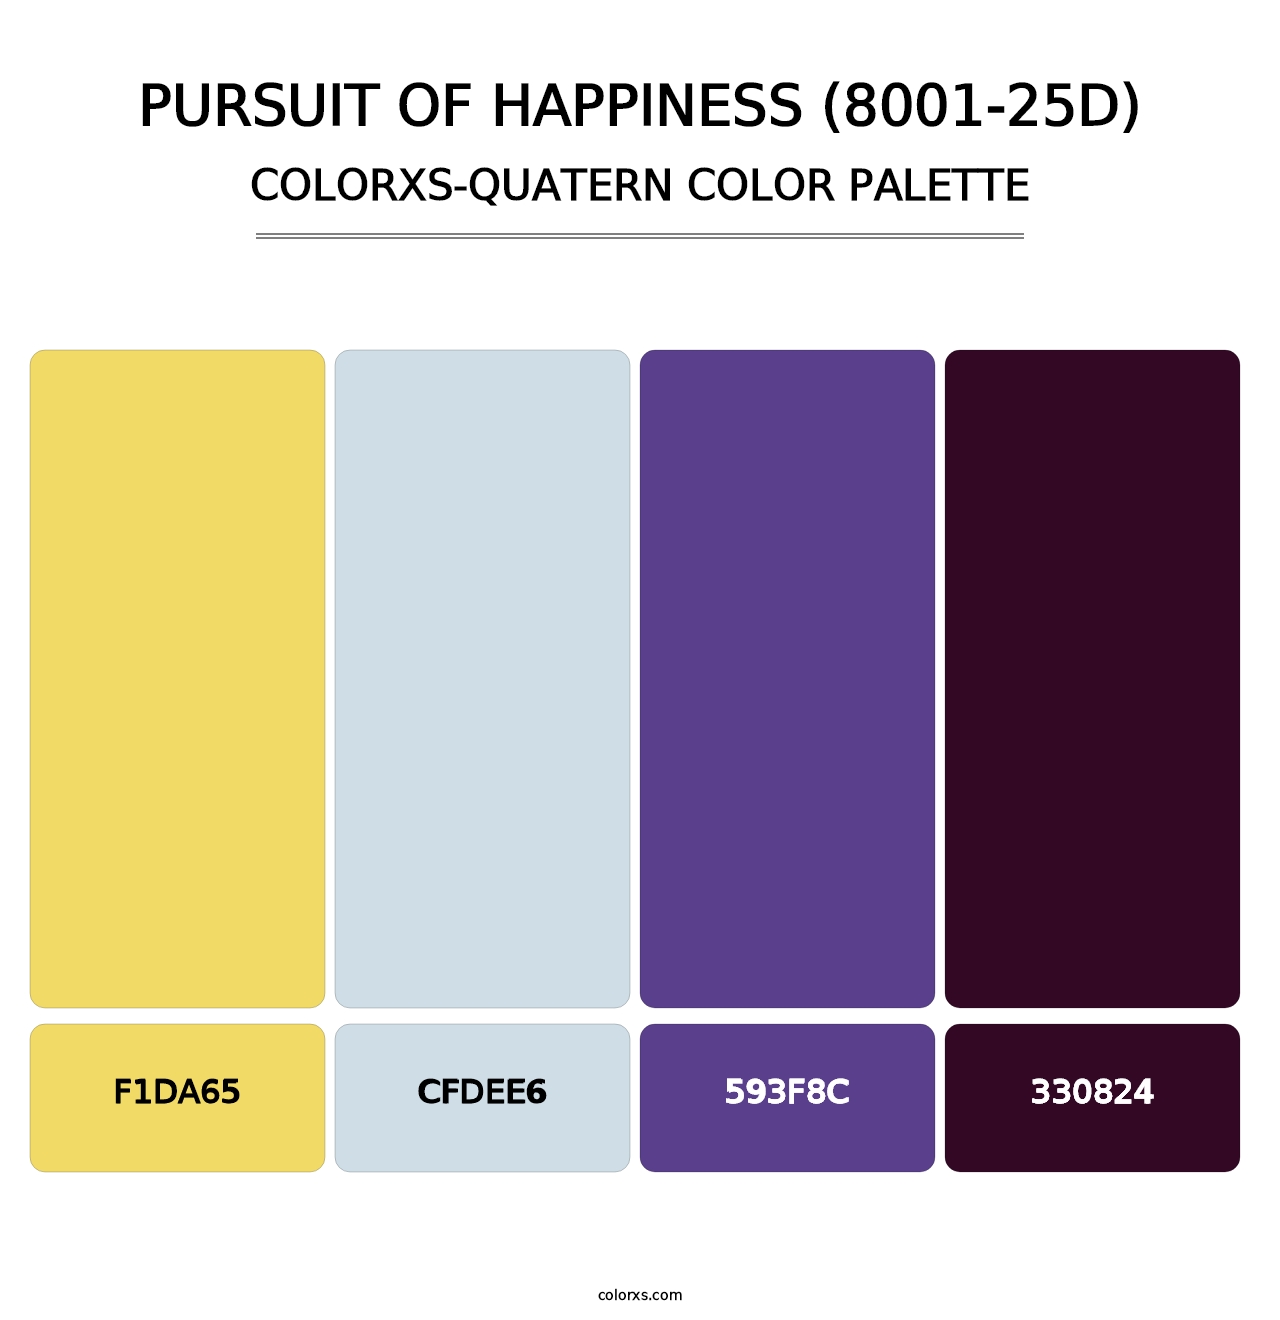 Pursuit of Happiness (8001-25D) - Colorxs Quatern Palette